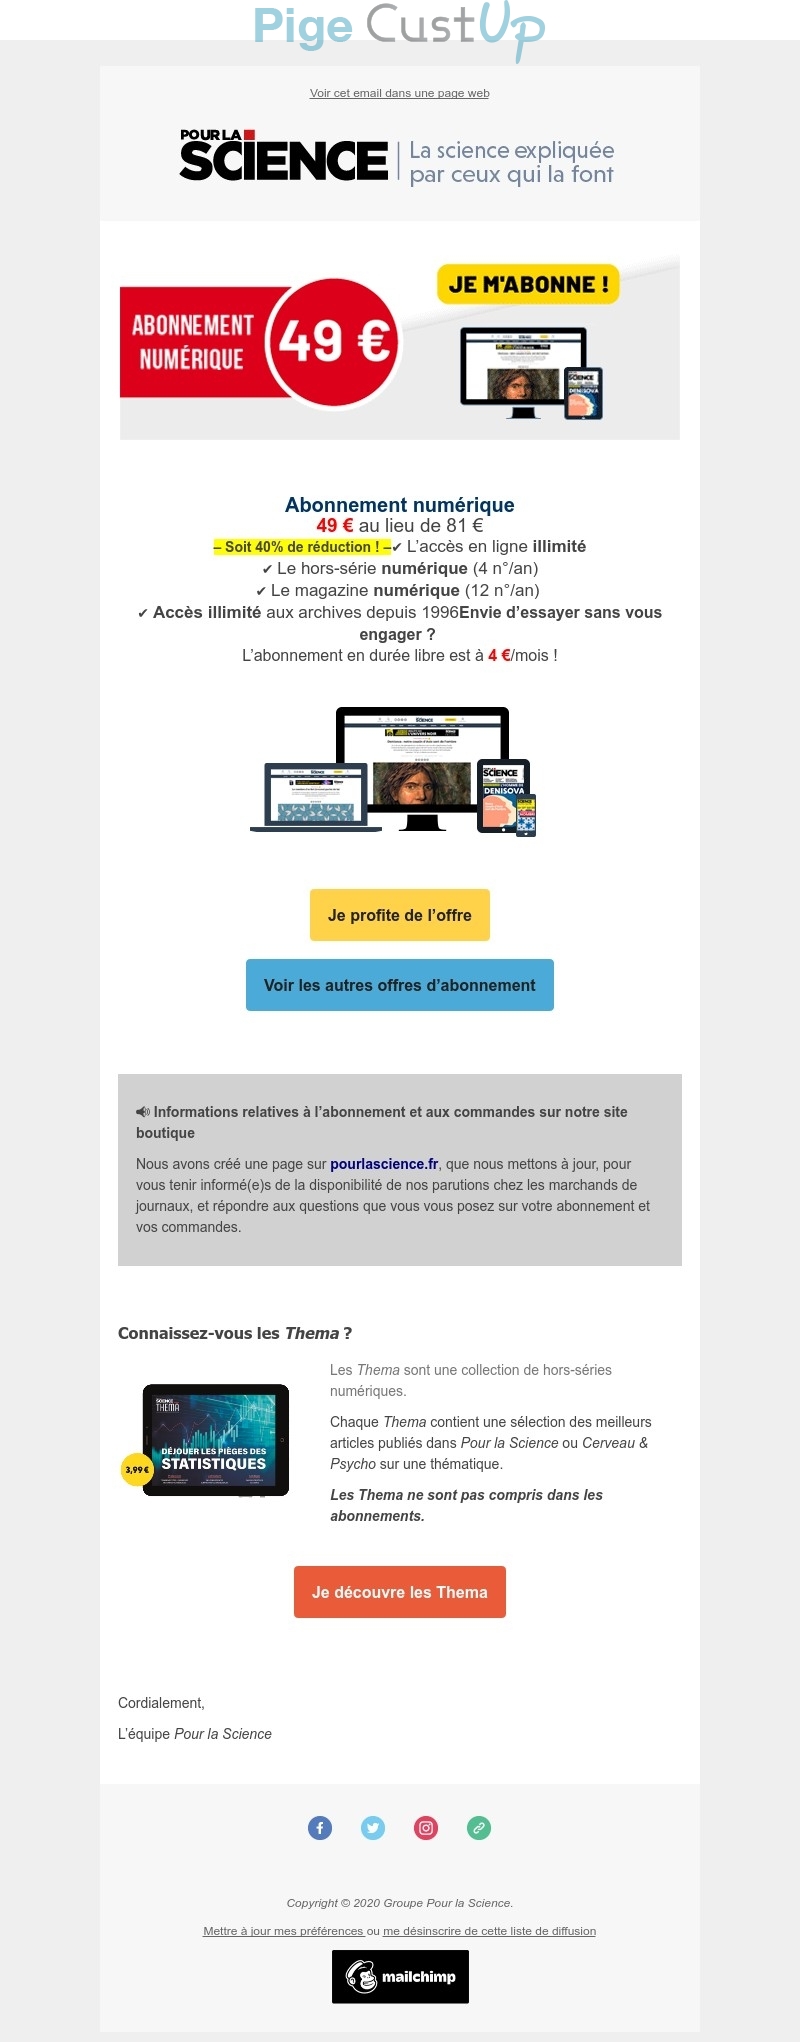 Exemple de Type de media  e-mailing - Pour la Science - Marketing Acquisition - Acquisition abonnements